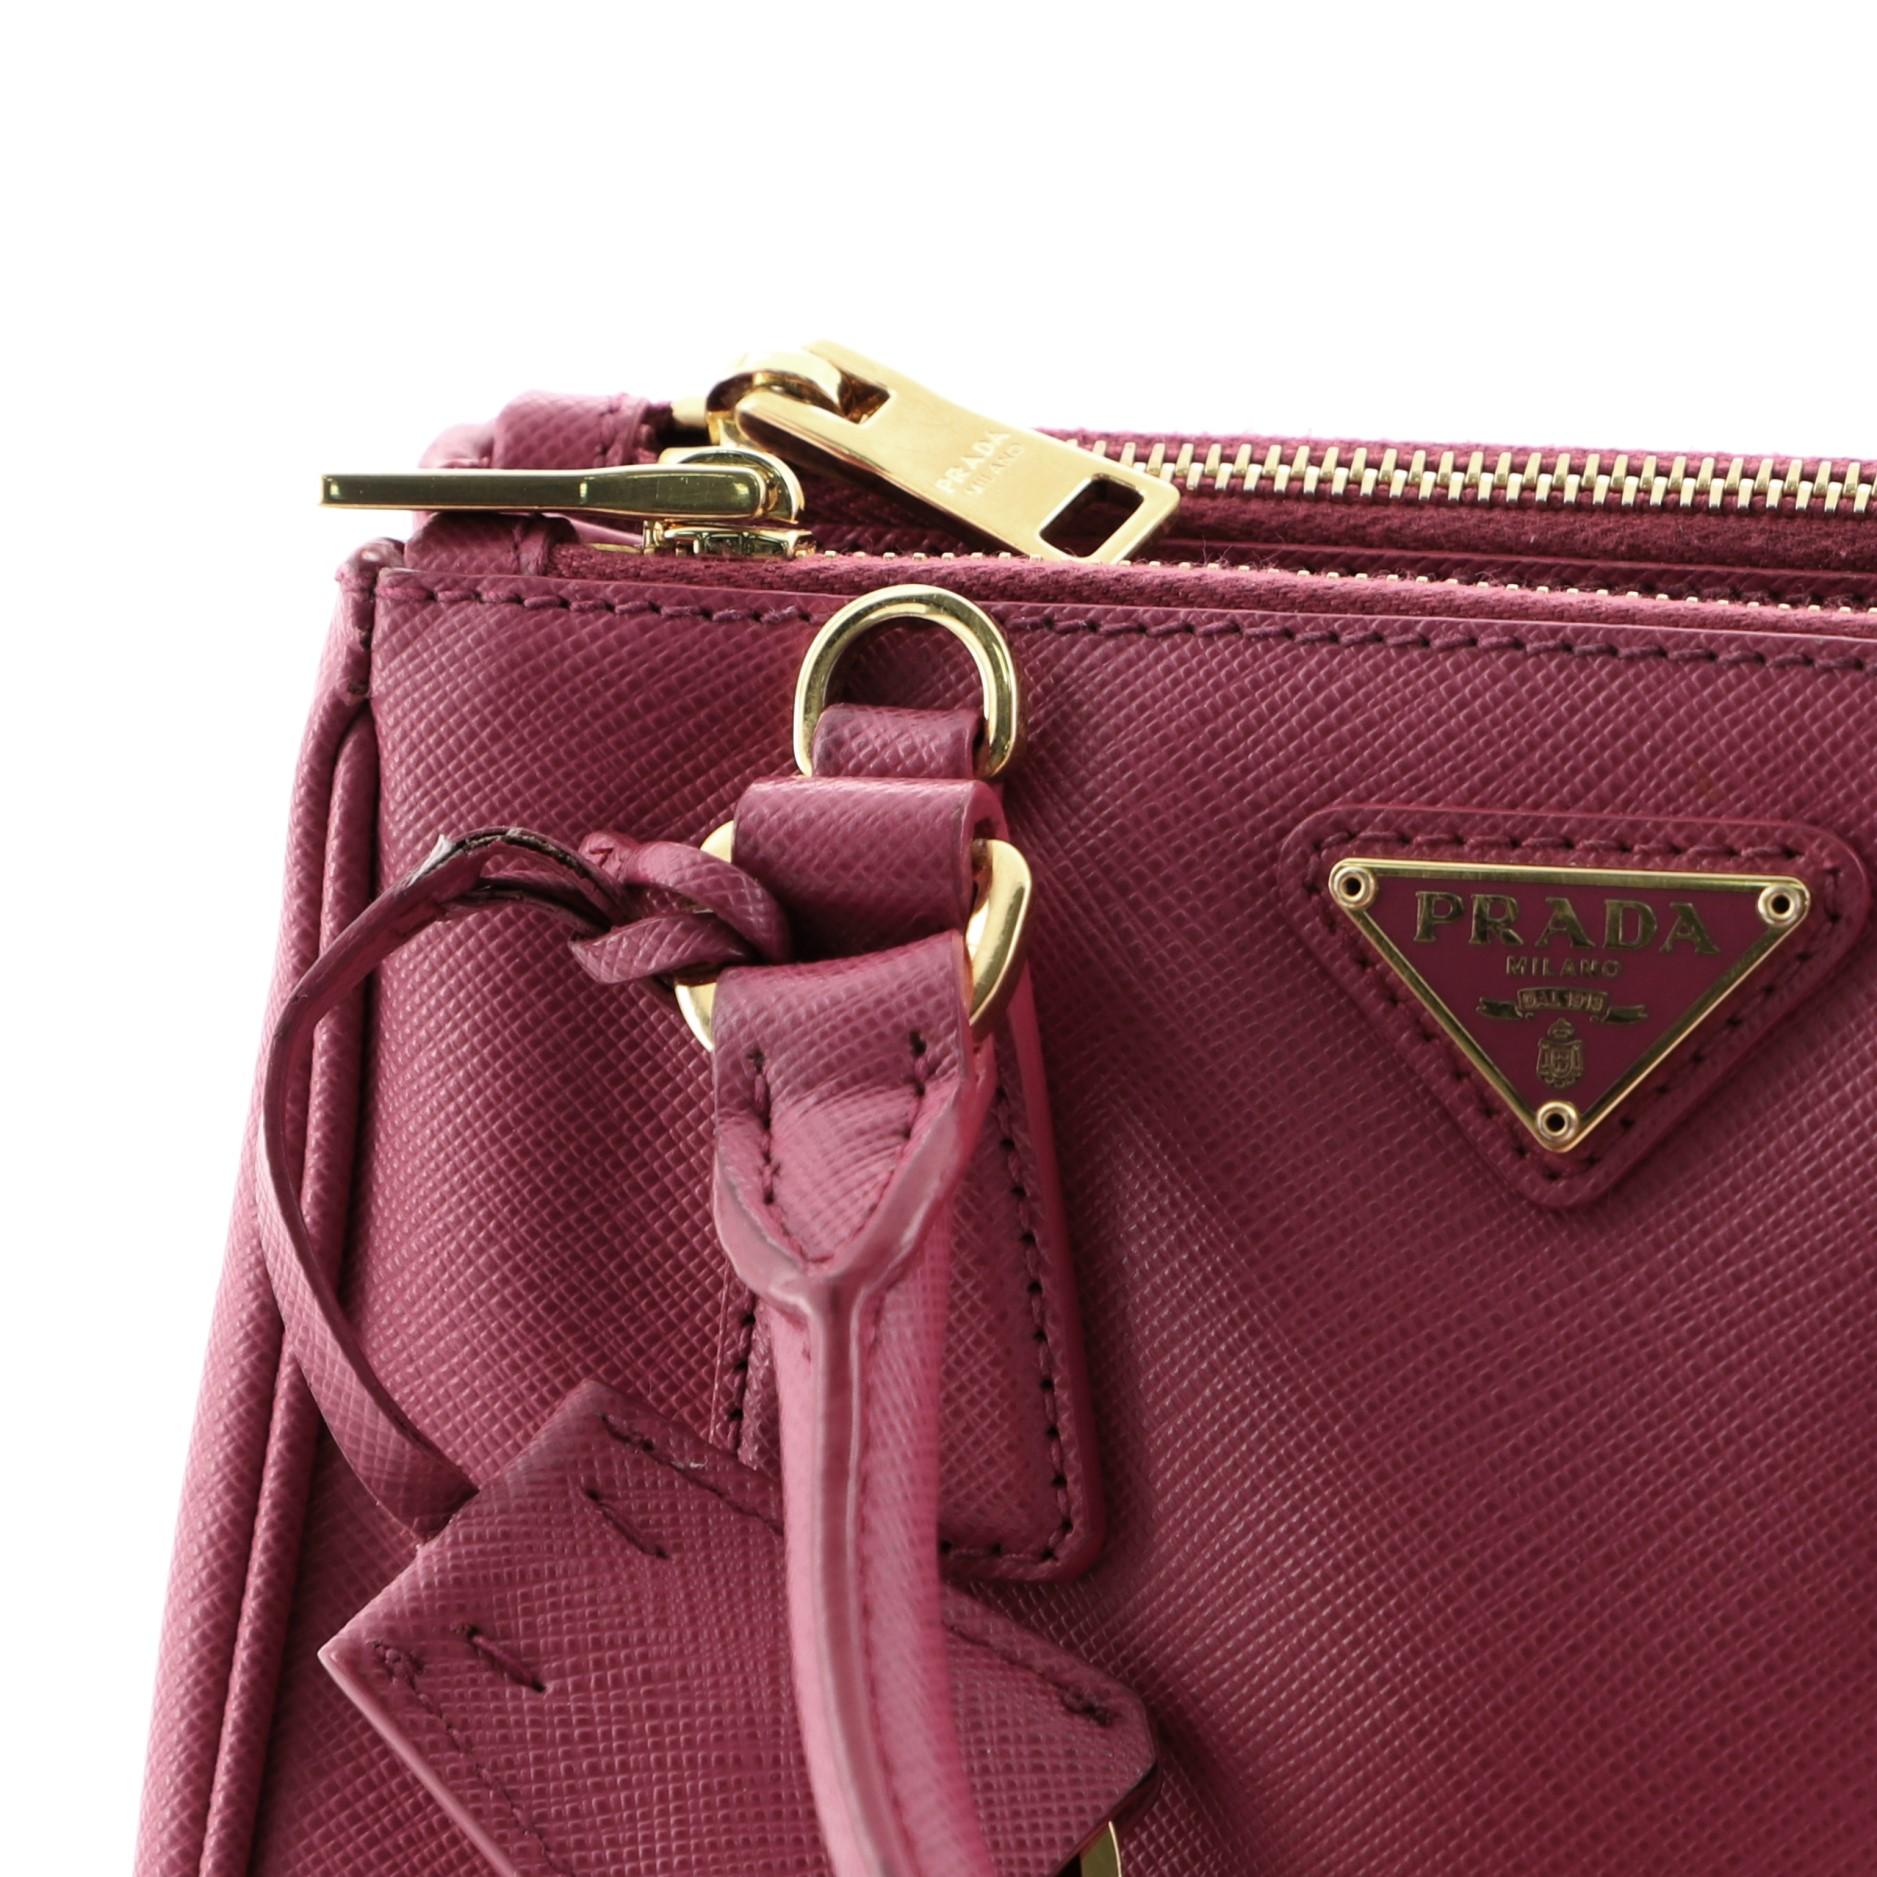 Women's Prada Galleria Double Zip Tote Saffiano Leather Mini